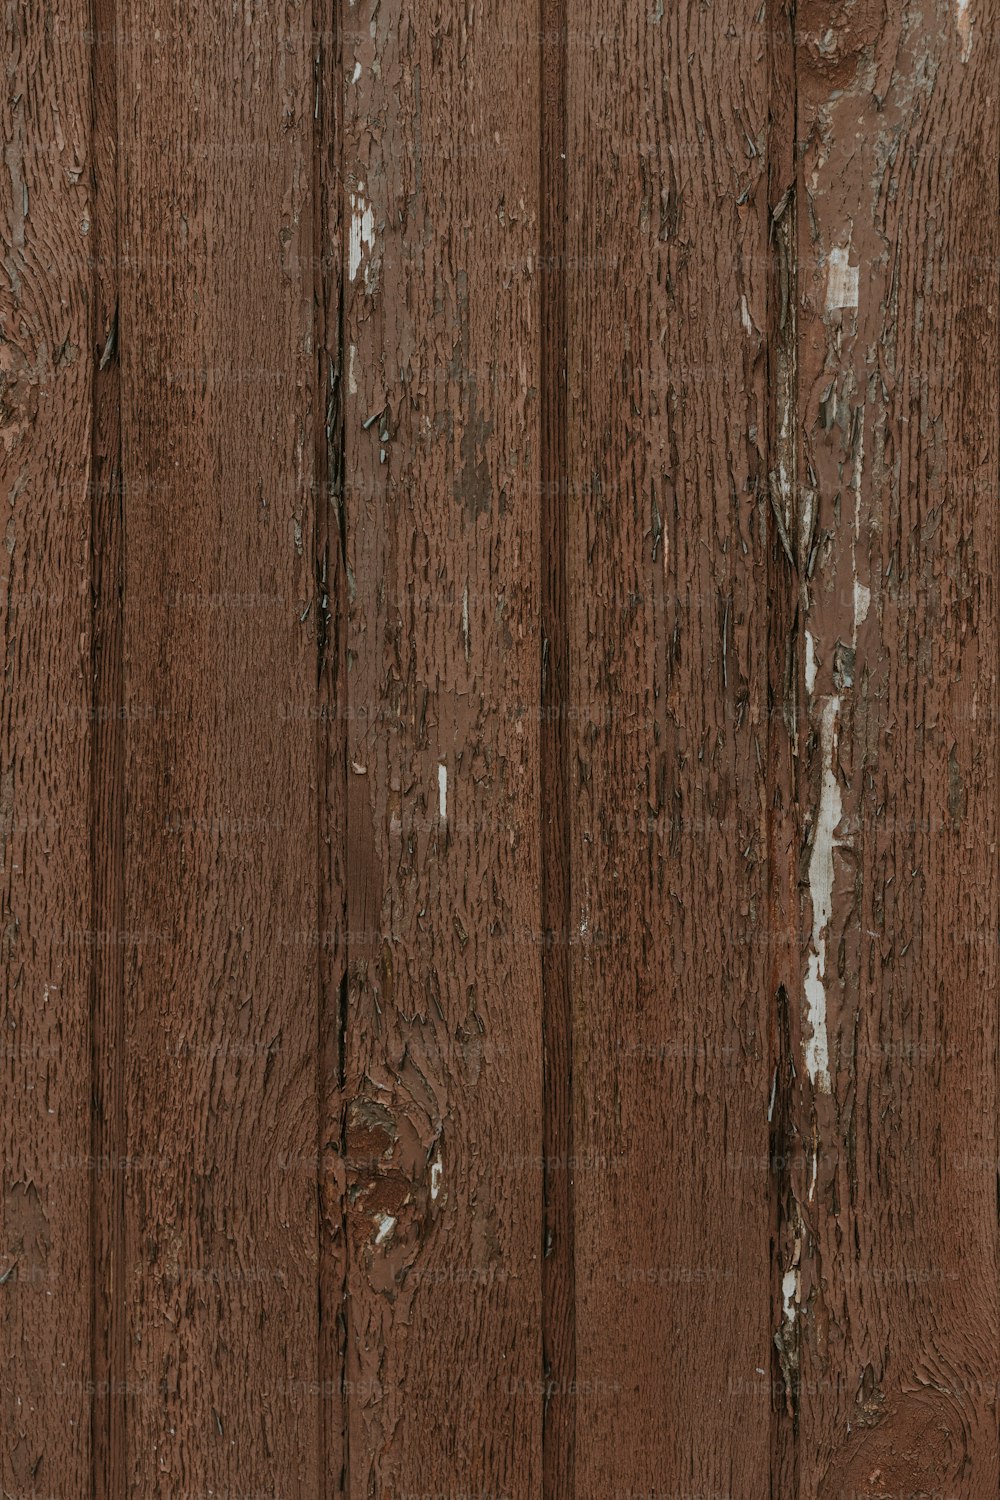 eine braune Holzwand mit abblätternder Farbe darauf